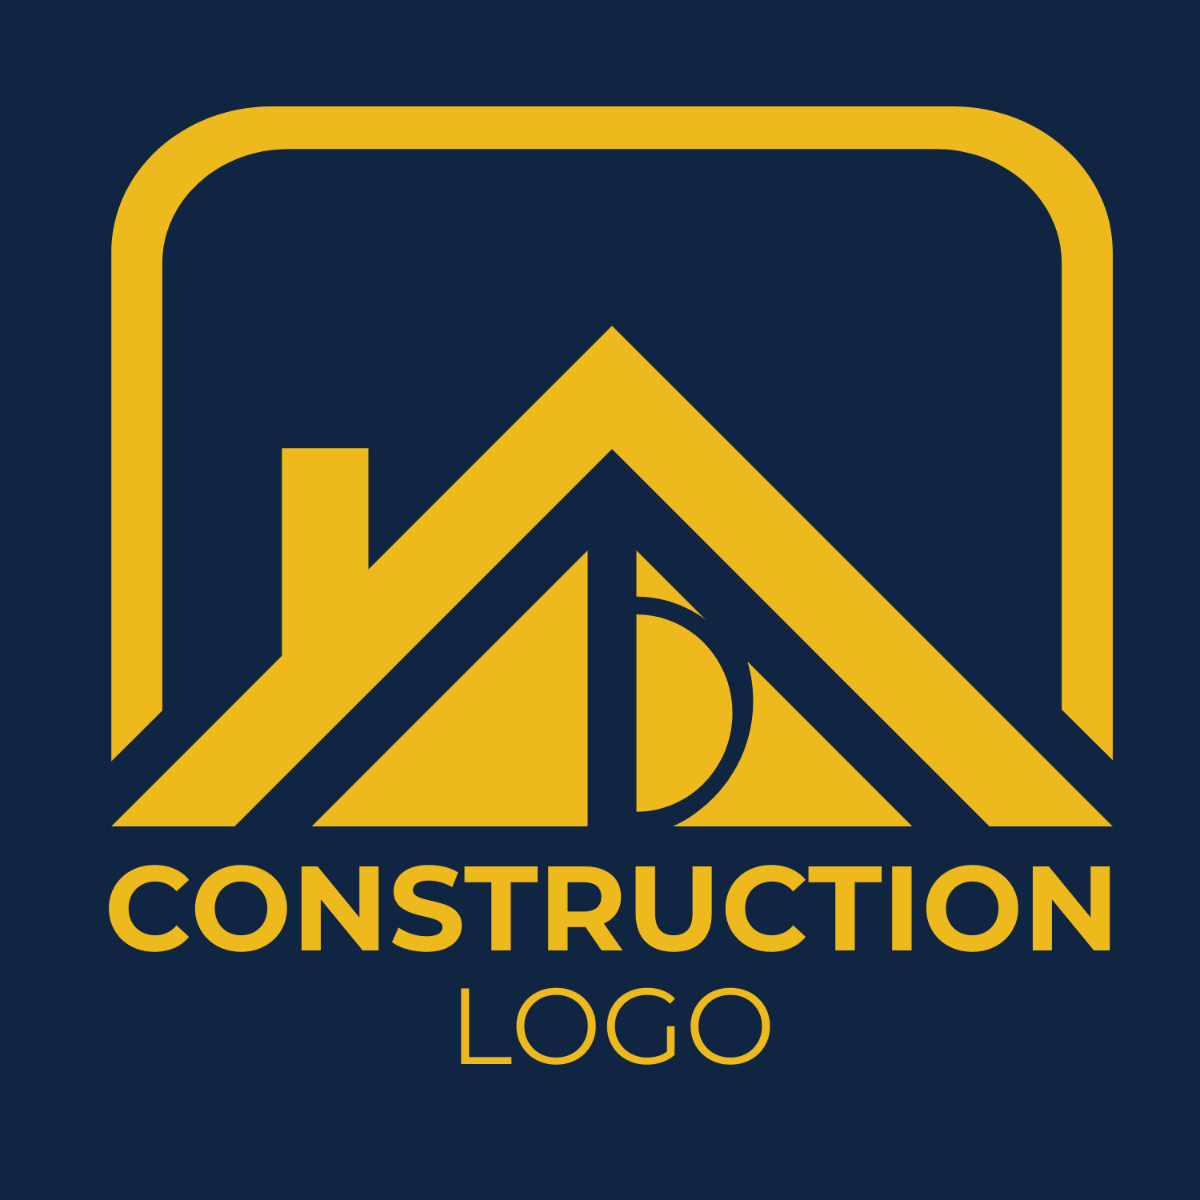 Construction Logo Design Ideas